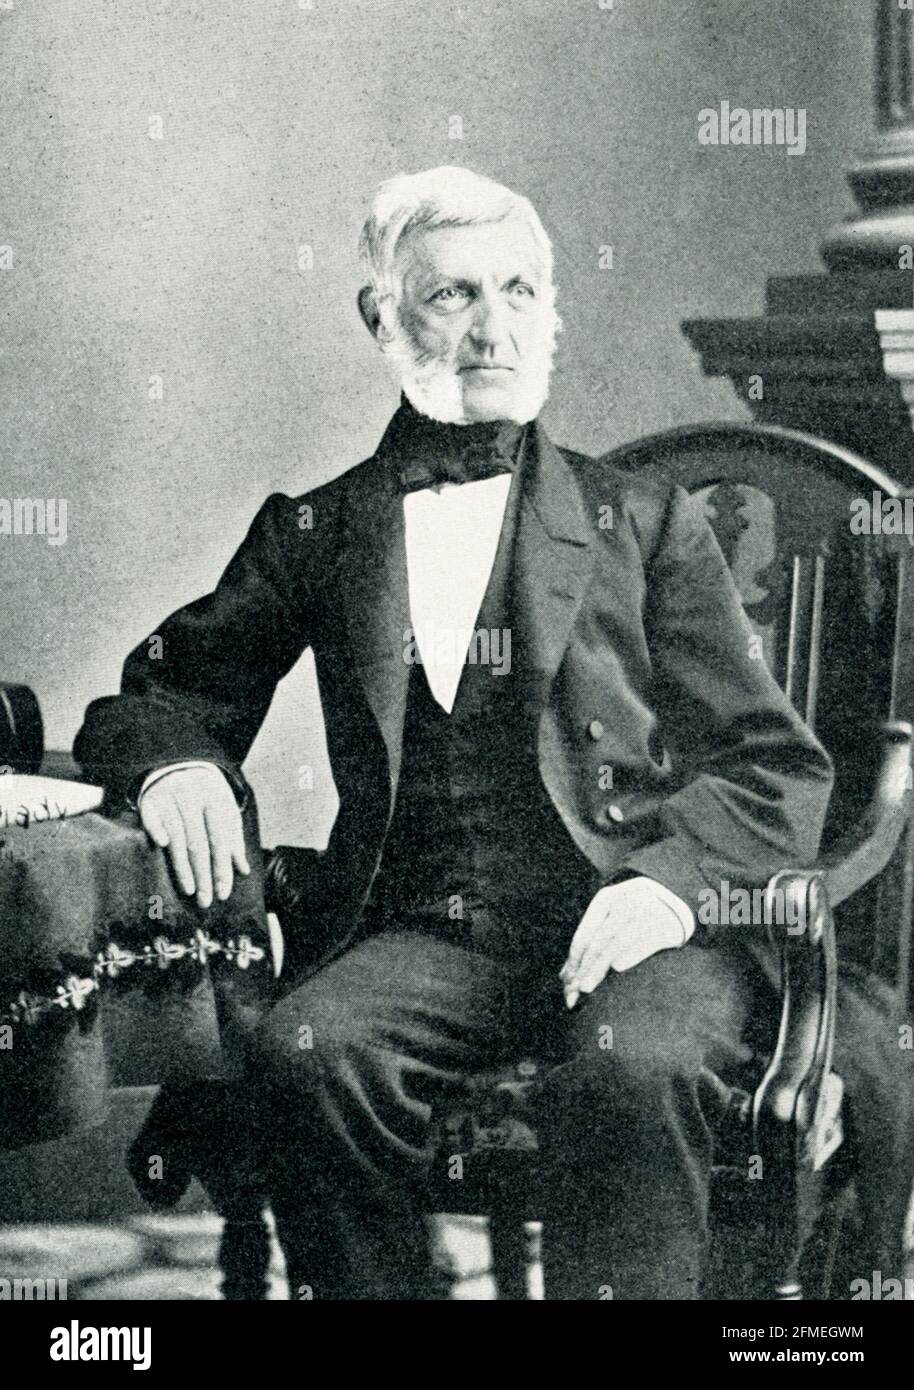 George Bancroft - fondatore dell'Accademia Navale. Già noto come storico nel 1845, Bancroft ha annunciato il suo ingresso nel gabinetto del presidente Polk, come Segretario della Marina, fondando la Scuola Navale, poi l’Accademia ad Annapolis. Foto Stock